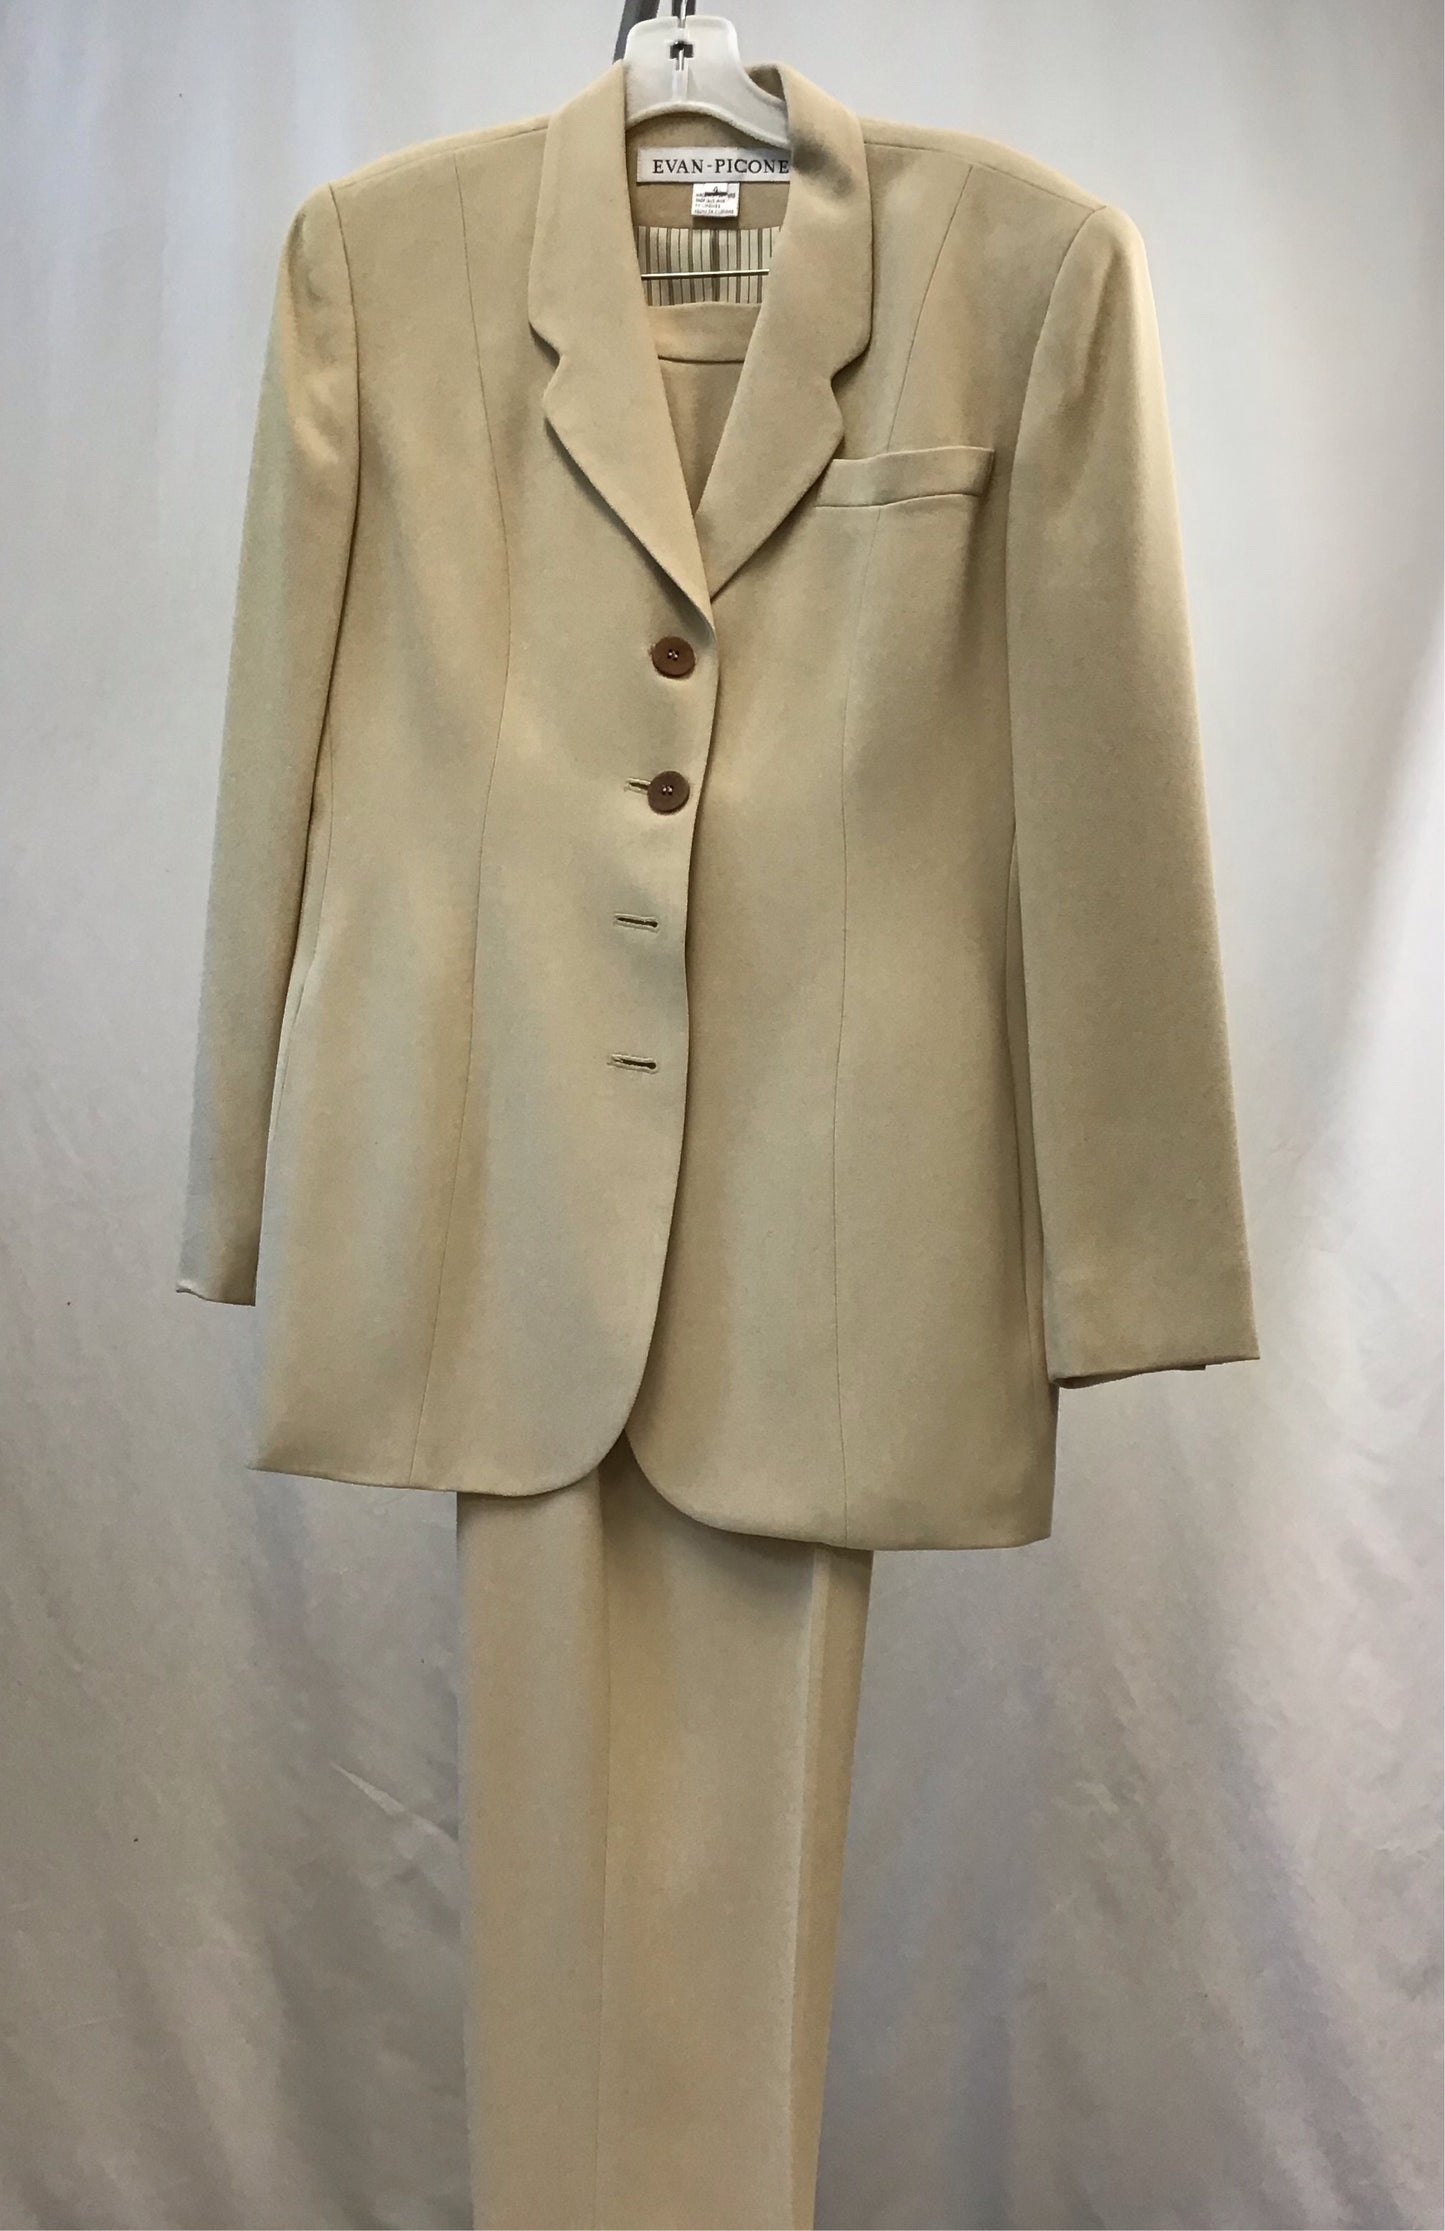 Evan Picone Beige Women's Dress Suit - Size 4